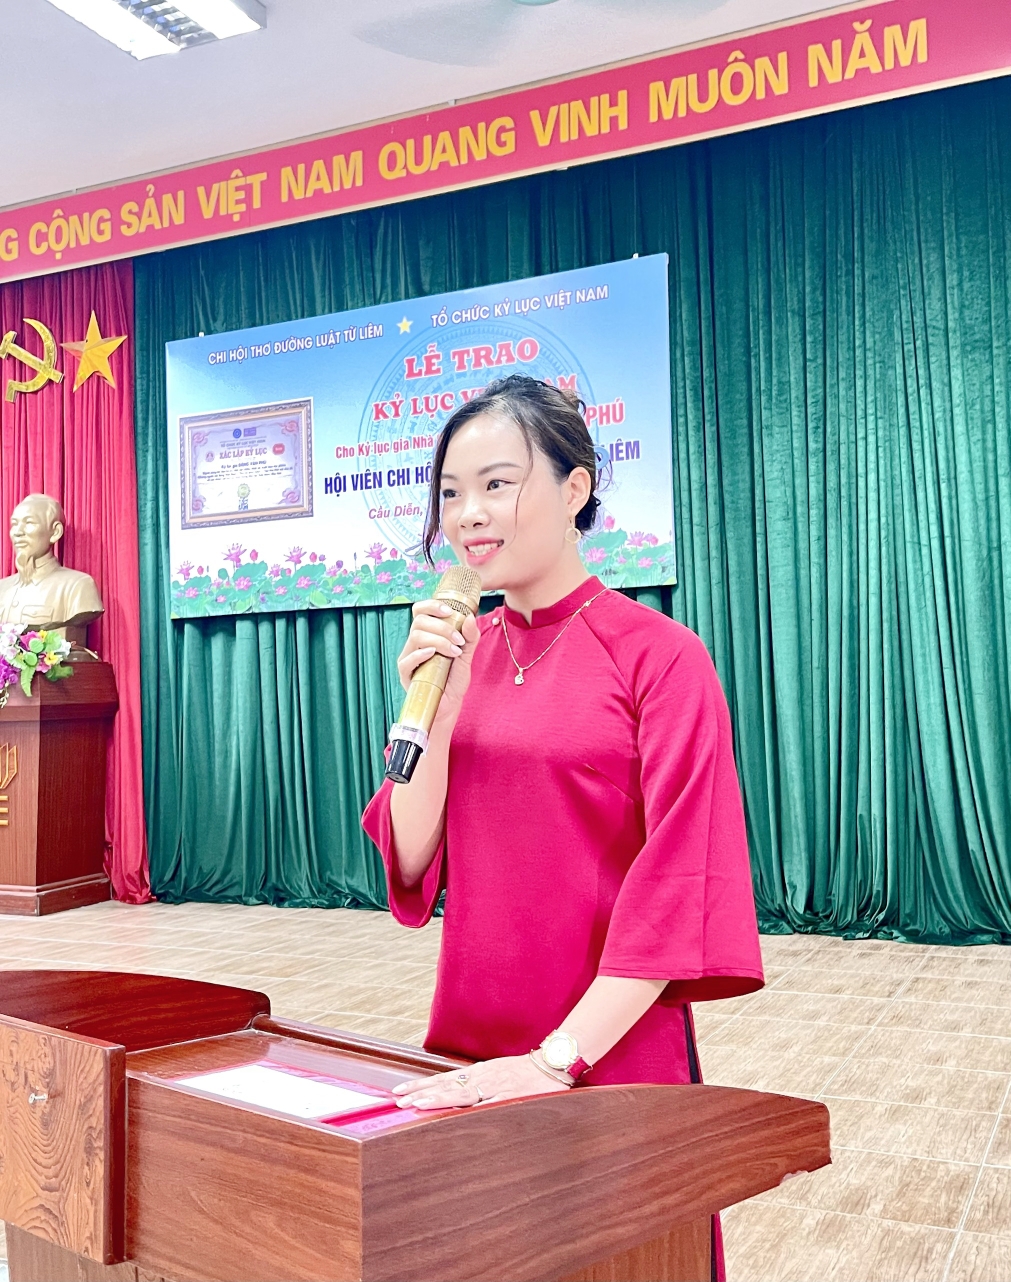 Bà Phạm Thị Vân – Phó Trưởng đại diện Miền Bắc Tổ chức Kỷ lục Việt Nam công bố quyết định xác lập Kỷ lục đến KLG Đặng Văn Phú.